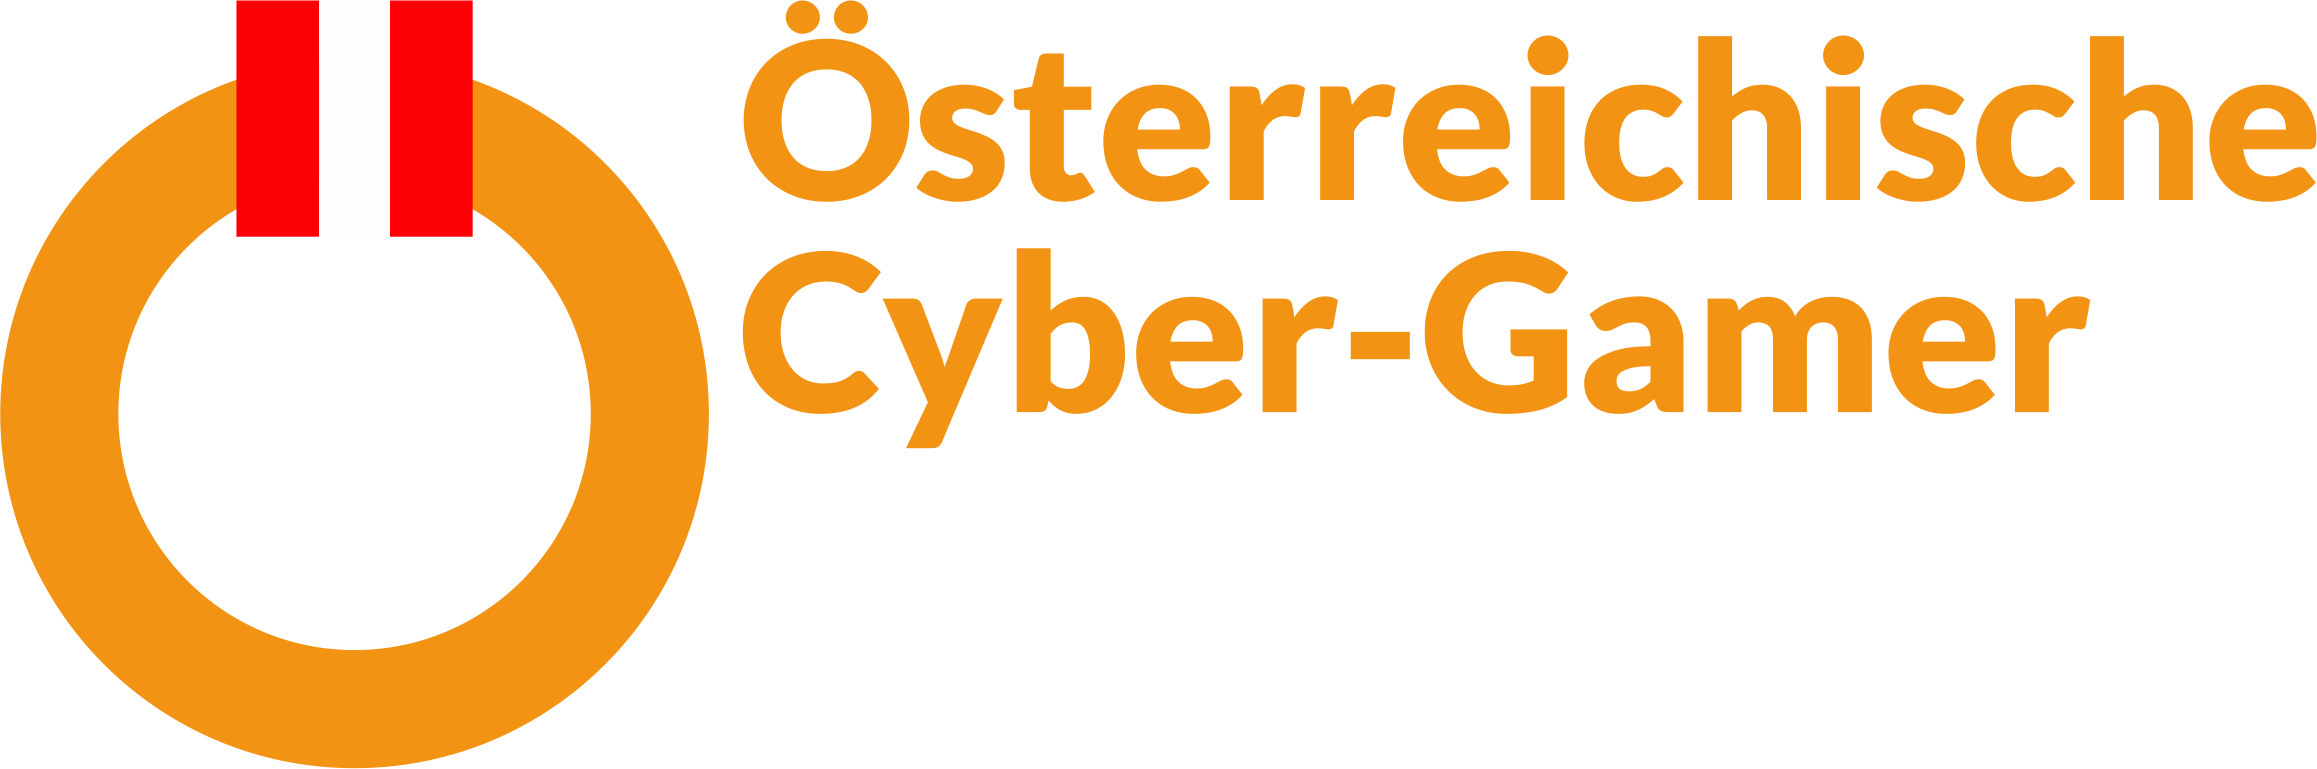 ÖCG Österreichische Cyber-Gamer